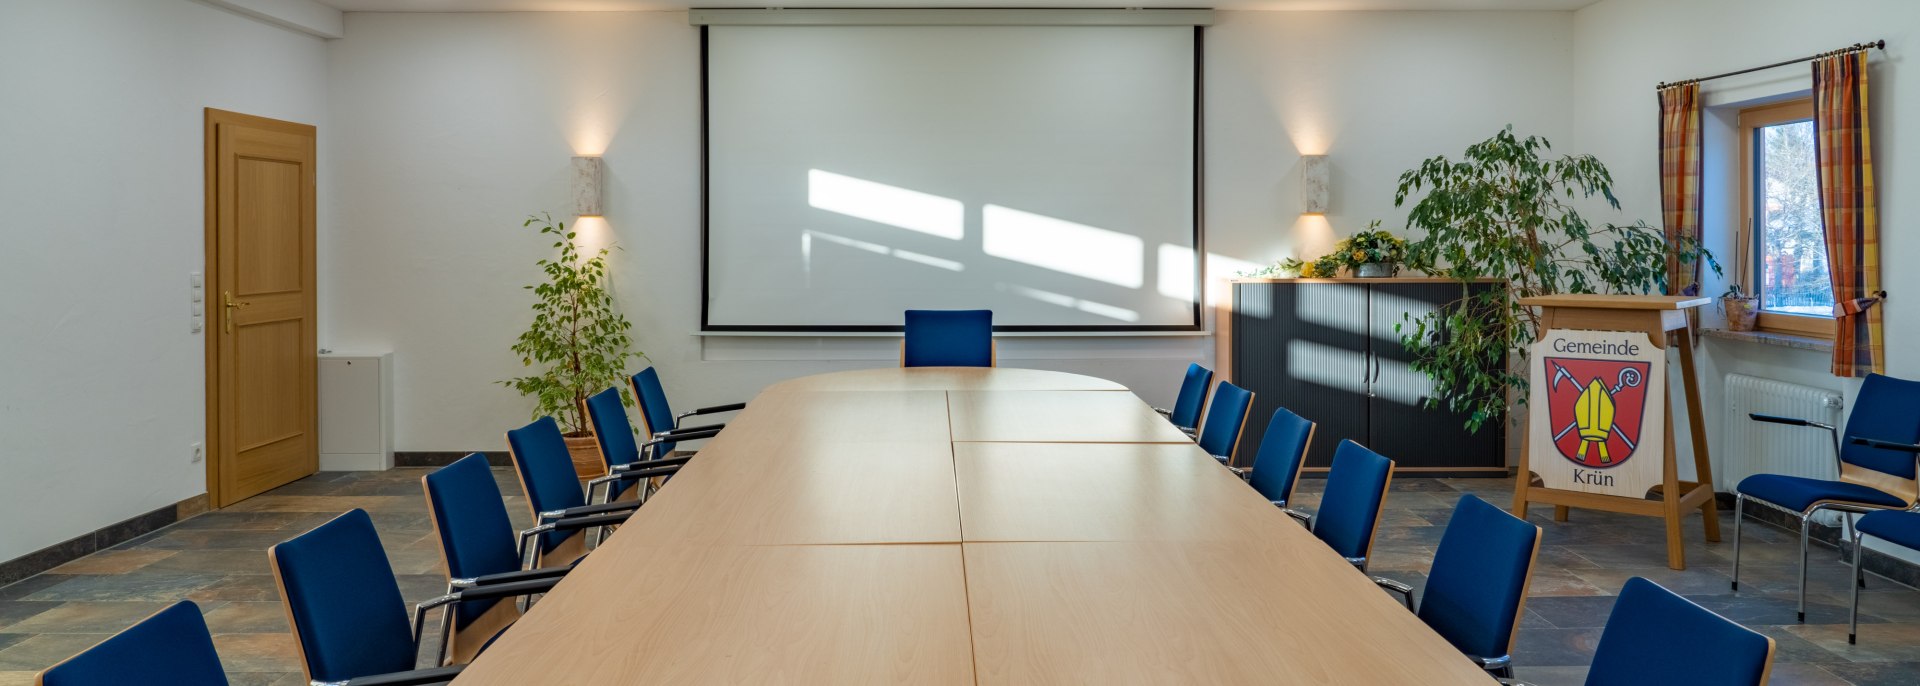 Sitzungssaal III, © Gemeinde Krün